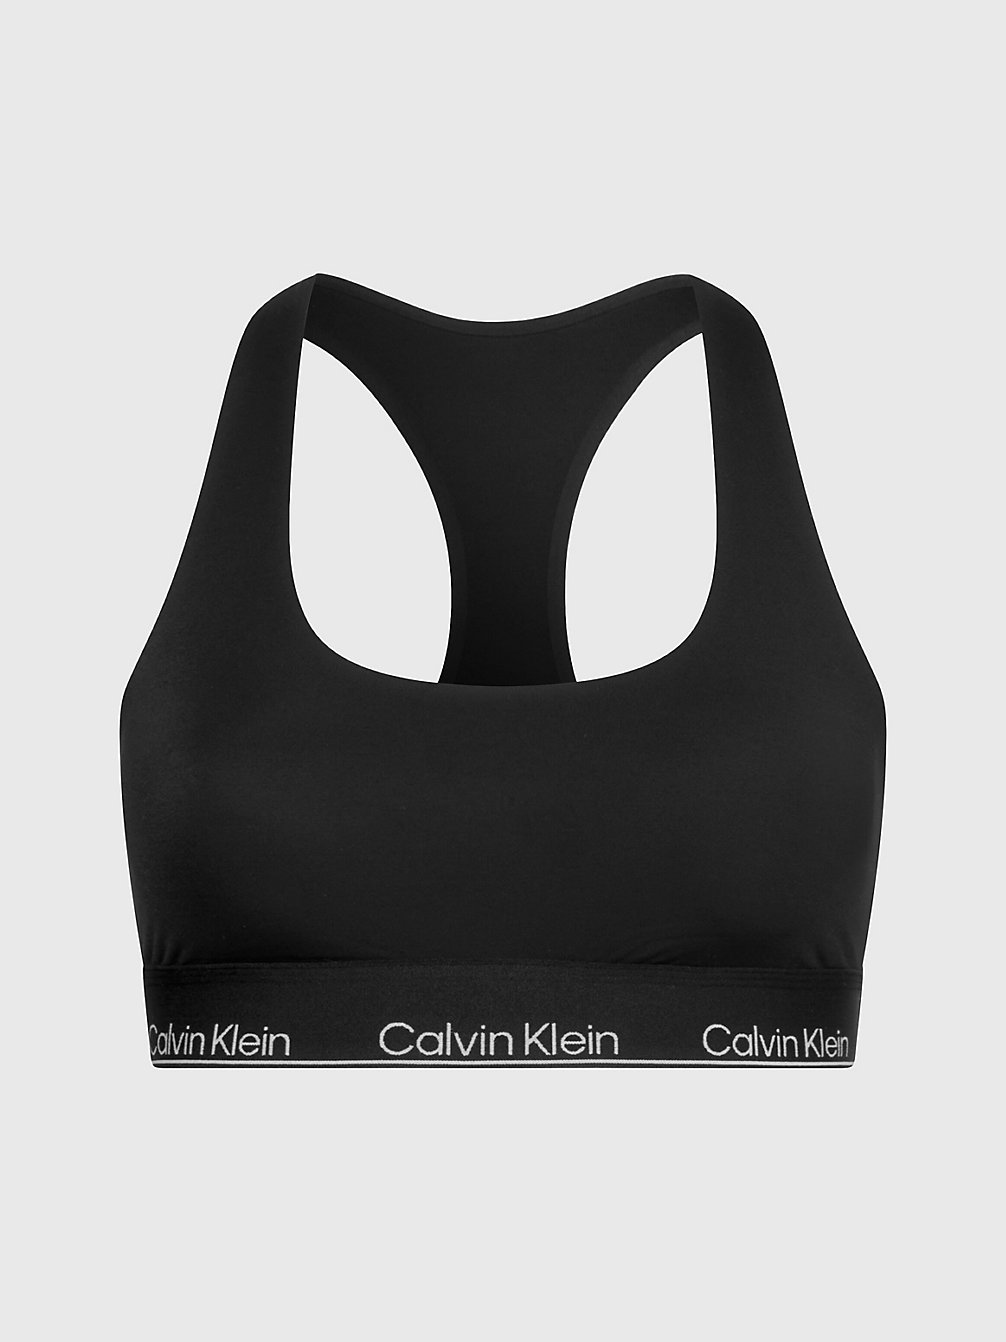 BLACK Bralette - Modern Performance undefined women Calvin Klein